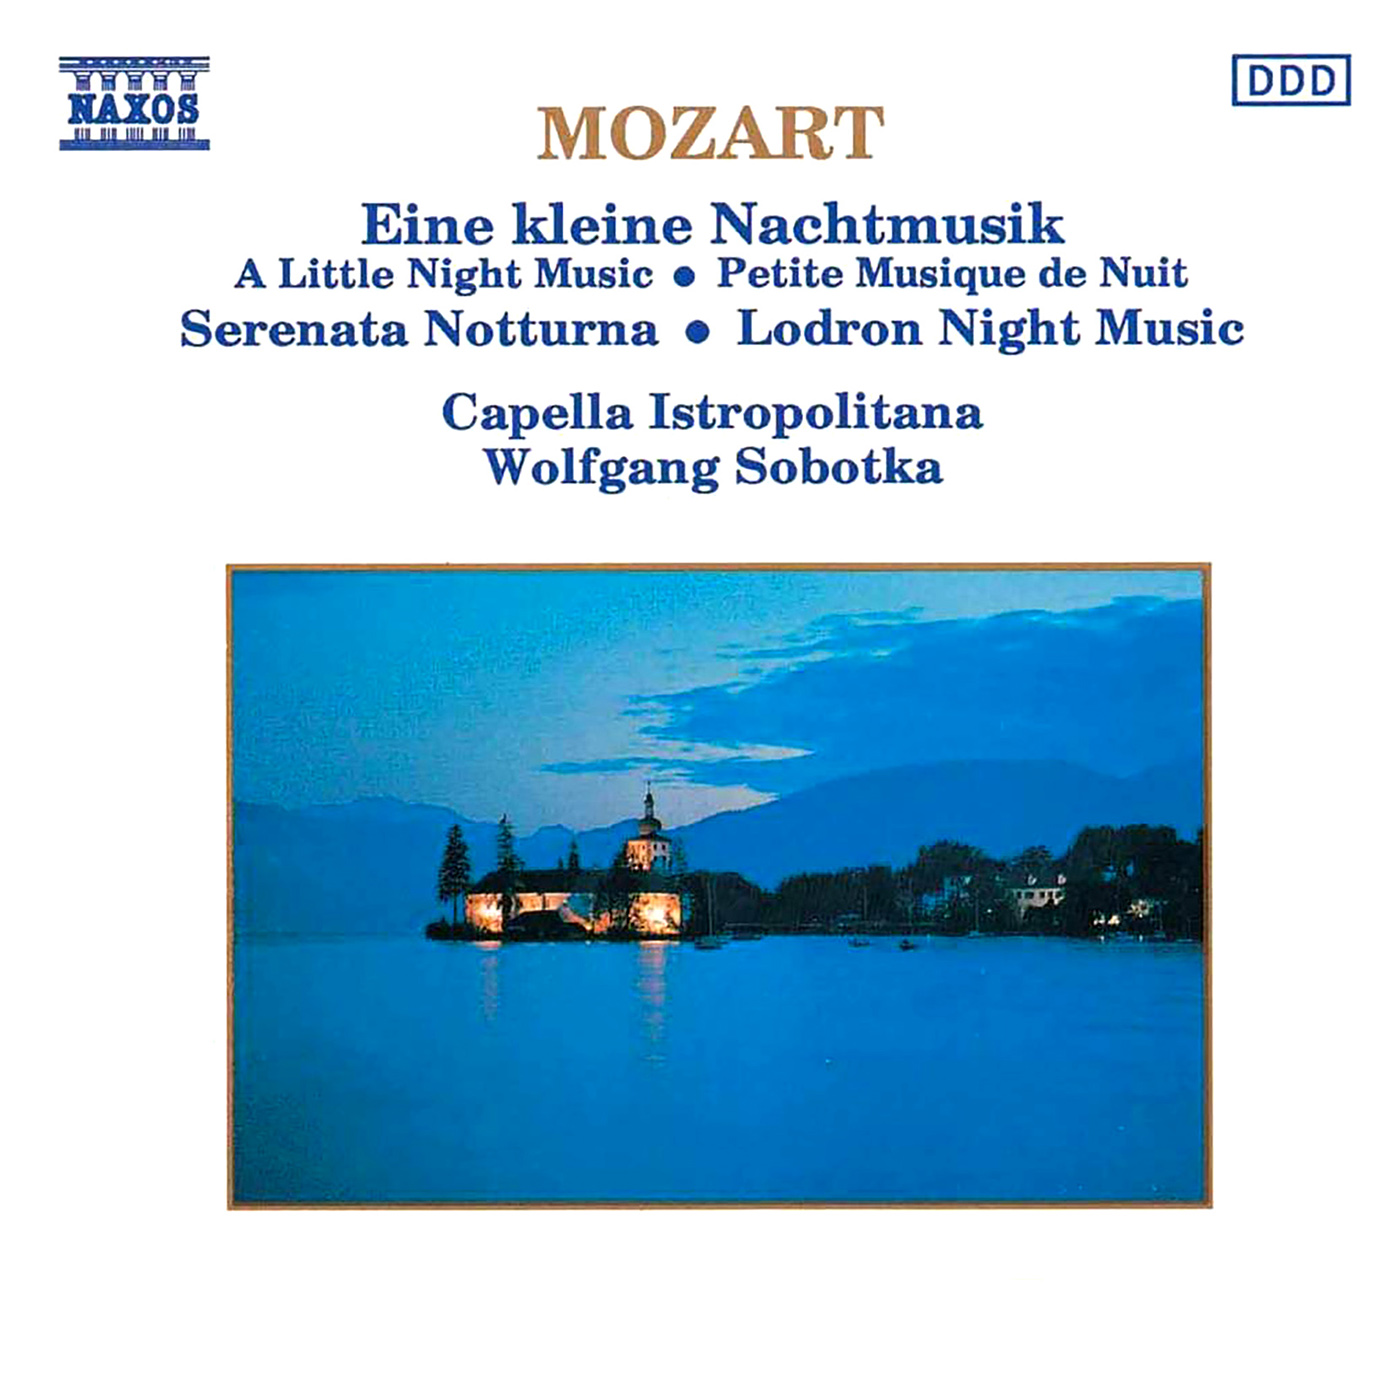 Serenade No. 13 in G Major, K. 525, "Eine kleine Nachtmusik": III. Menuetto: Allegro - Trio